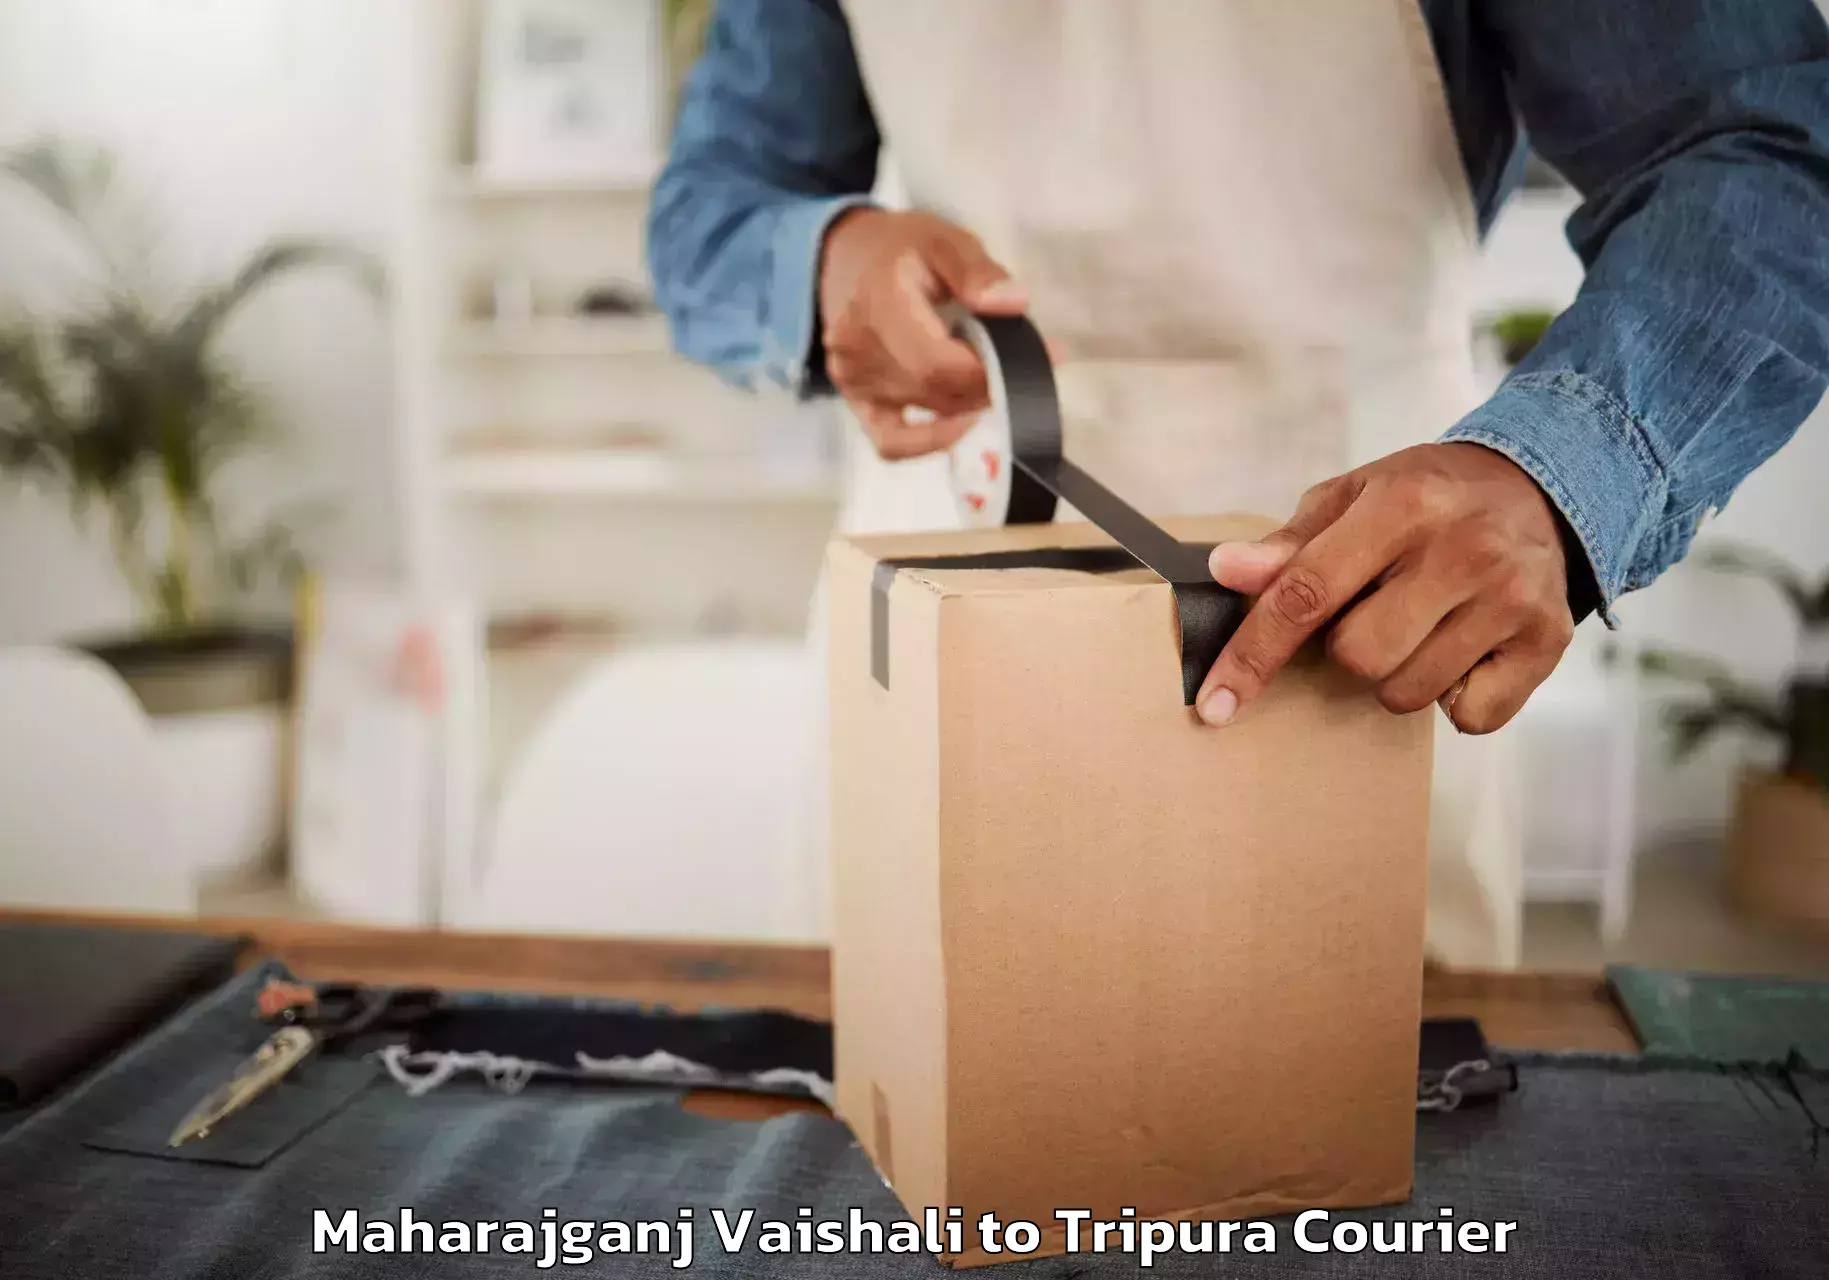 Furniture transport experts Maharajganj Vaishali to Manughat